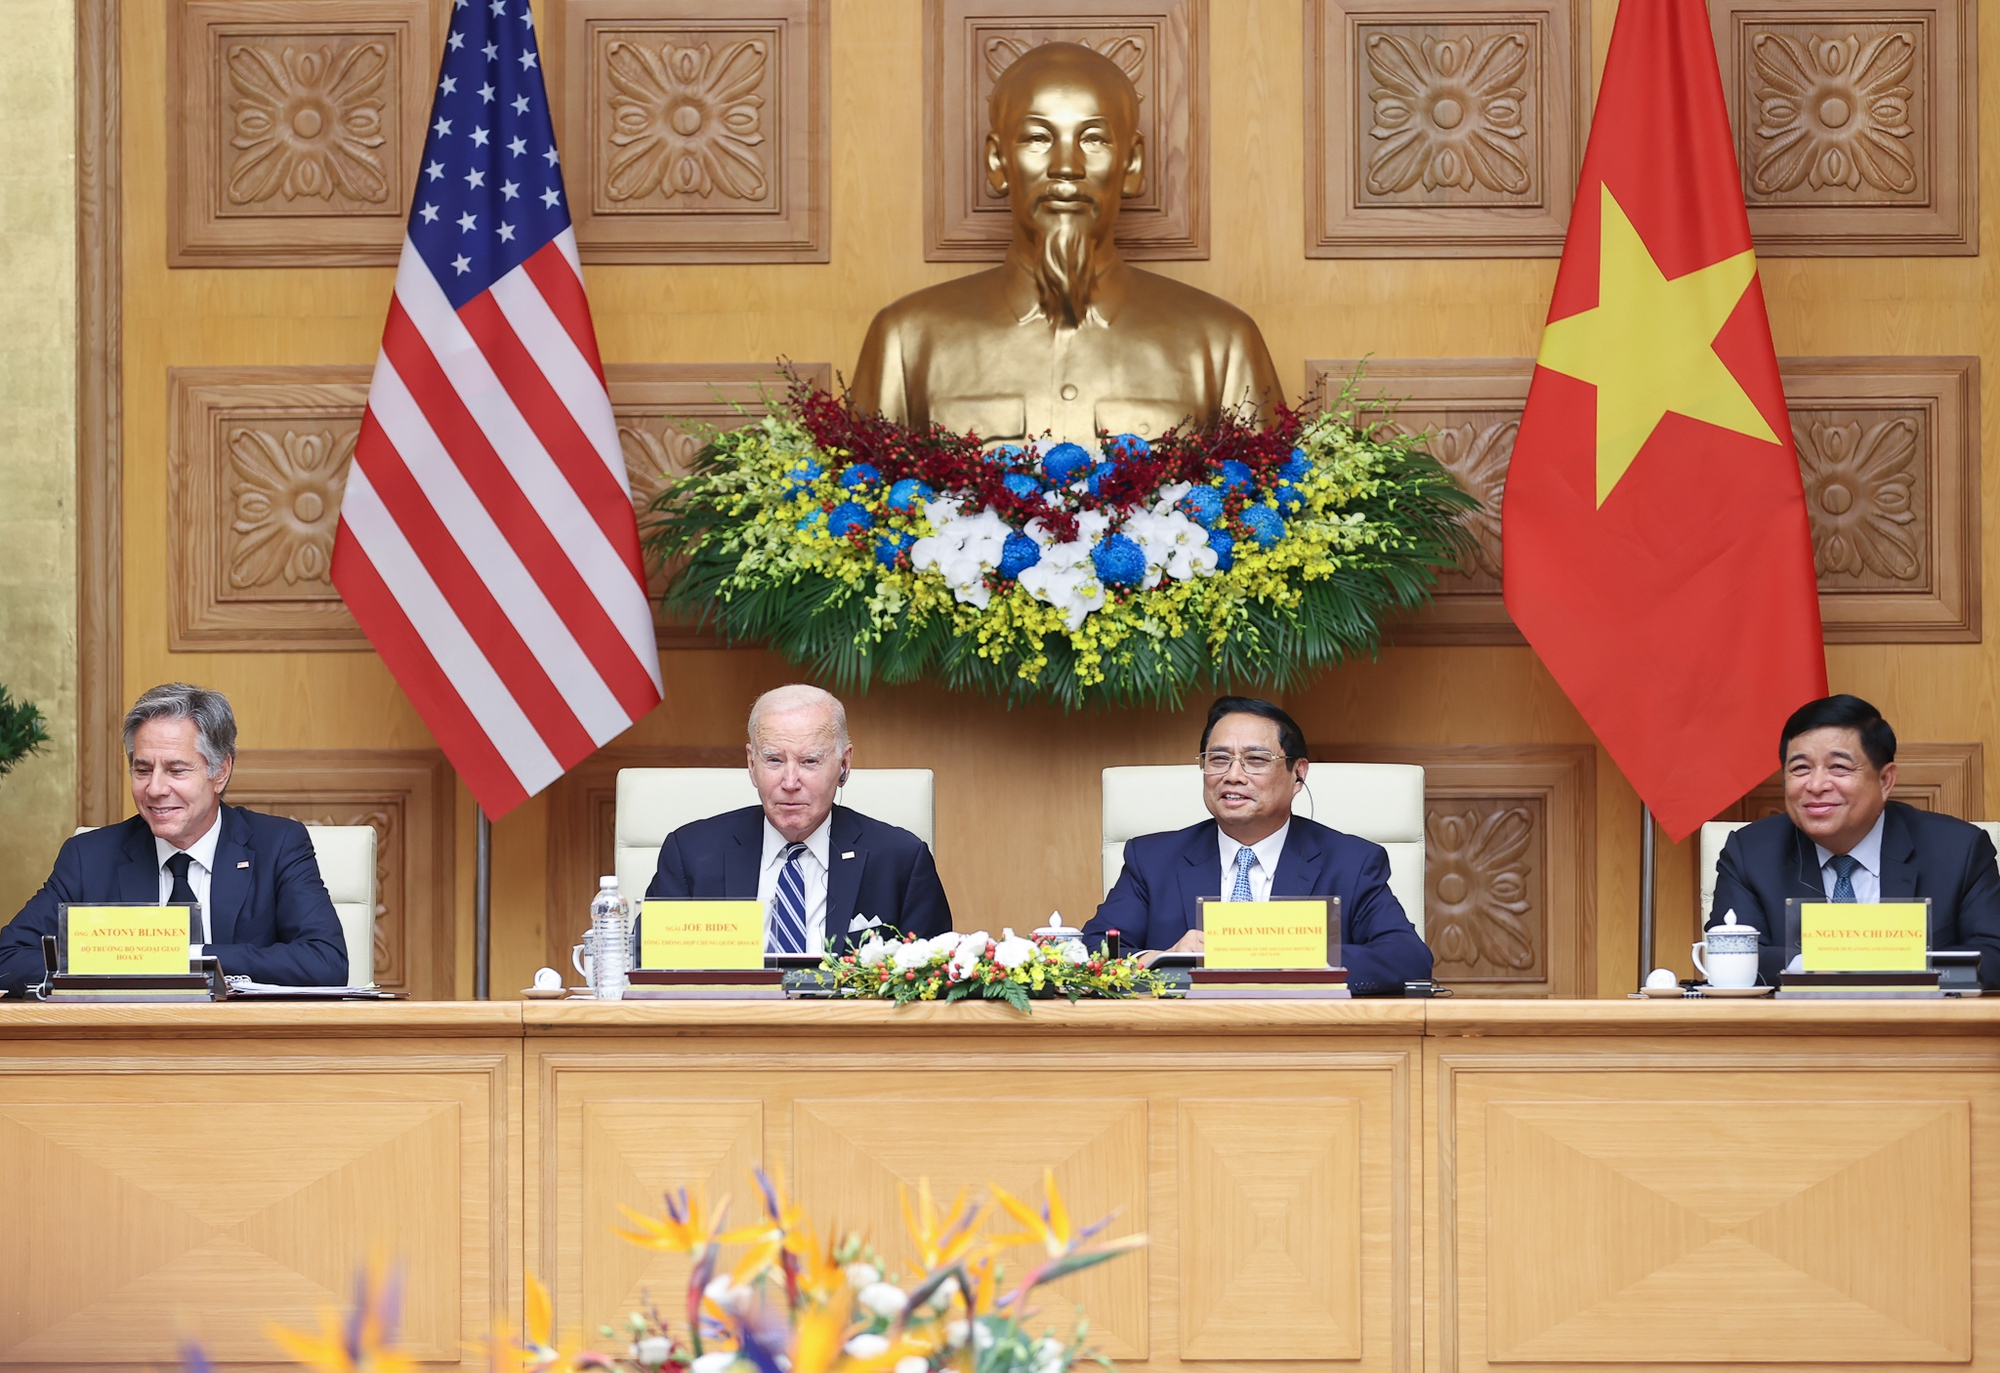 Đưa công nghệ, đổi mới sáng tạo và đầu tư trở thành trụ cột mới của quan hệ Việt Nam - Hoa Kỳ